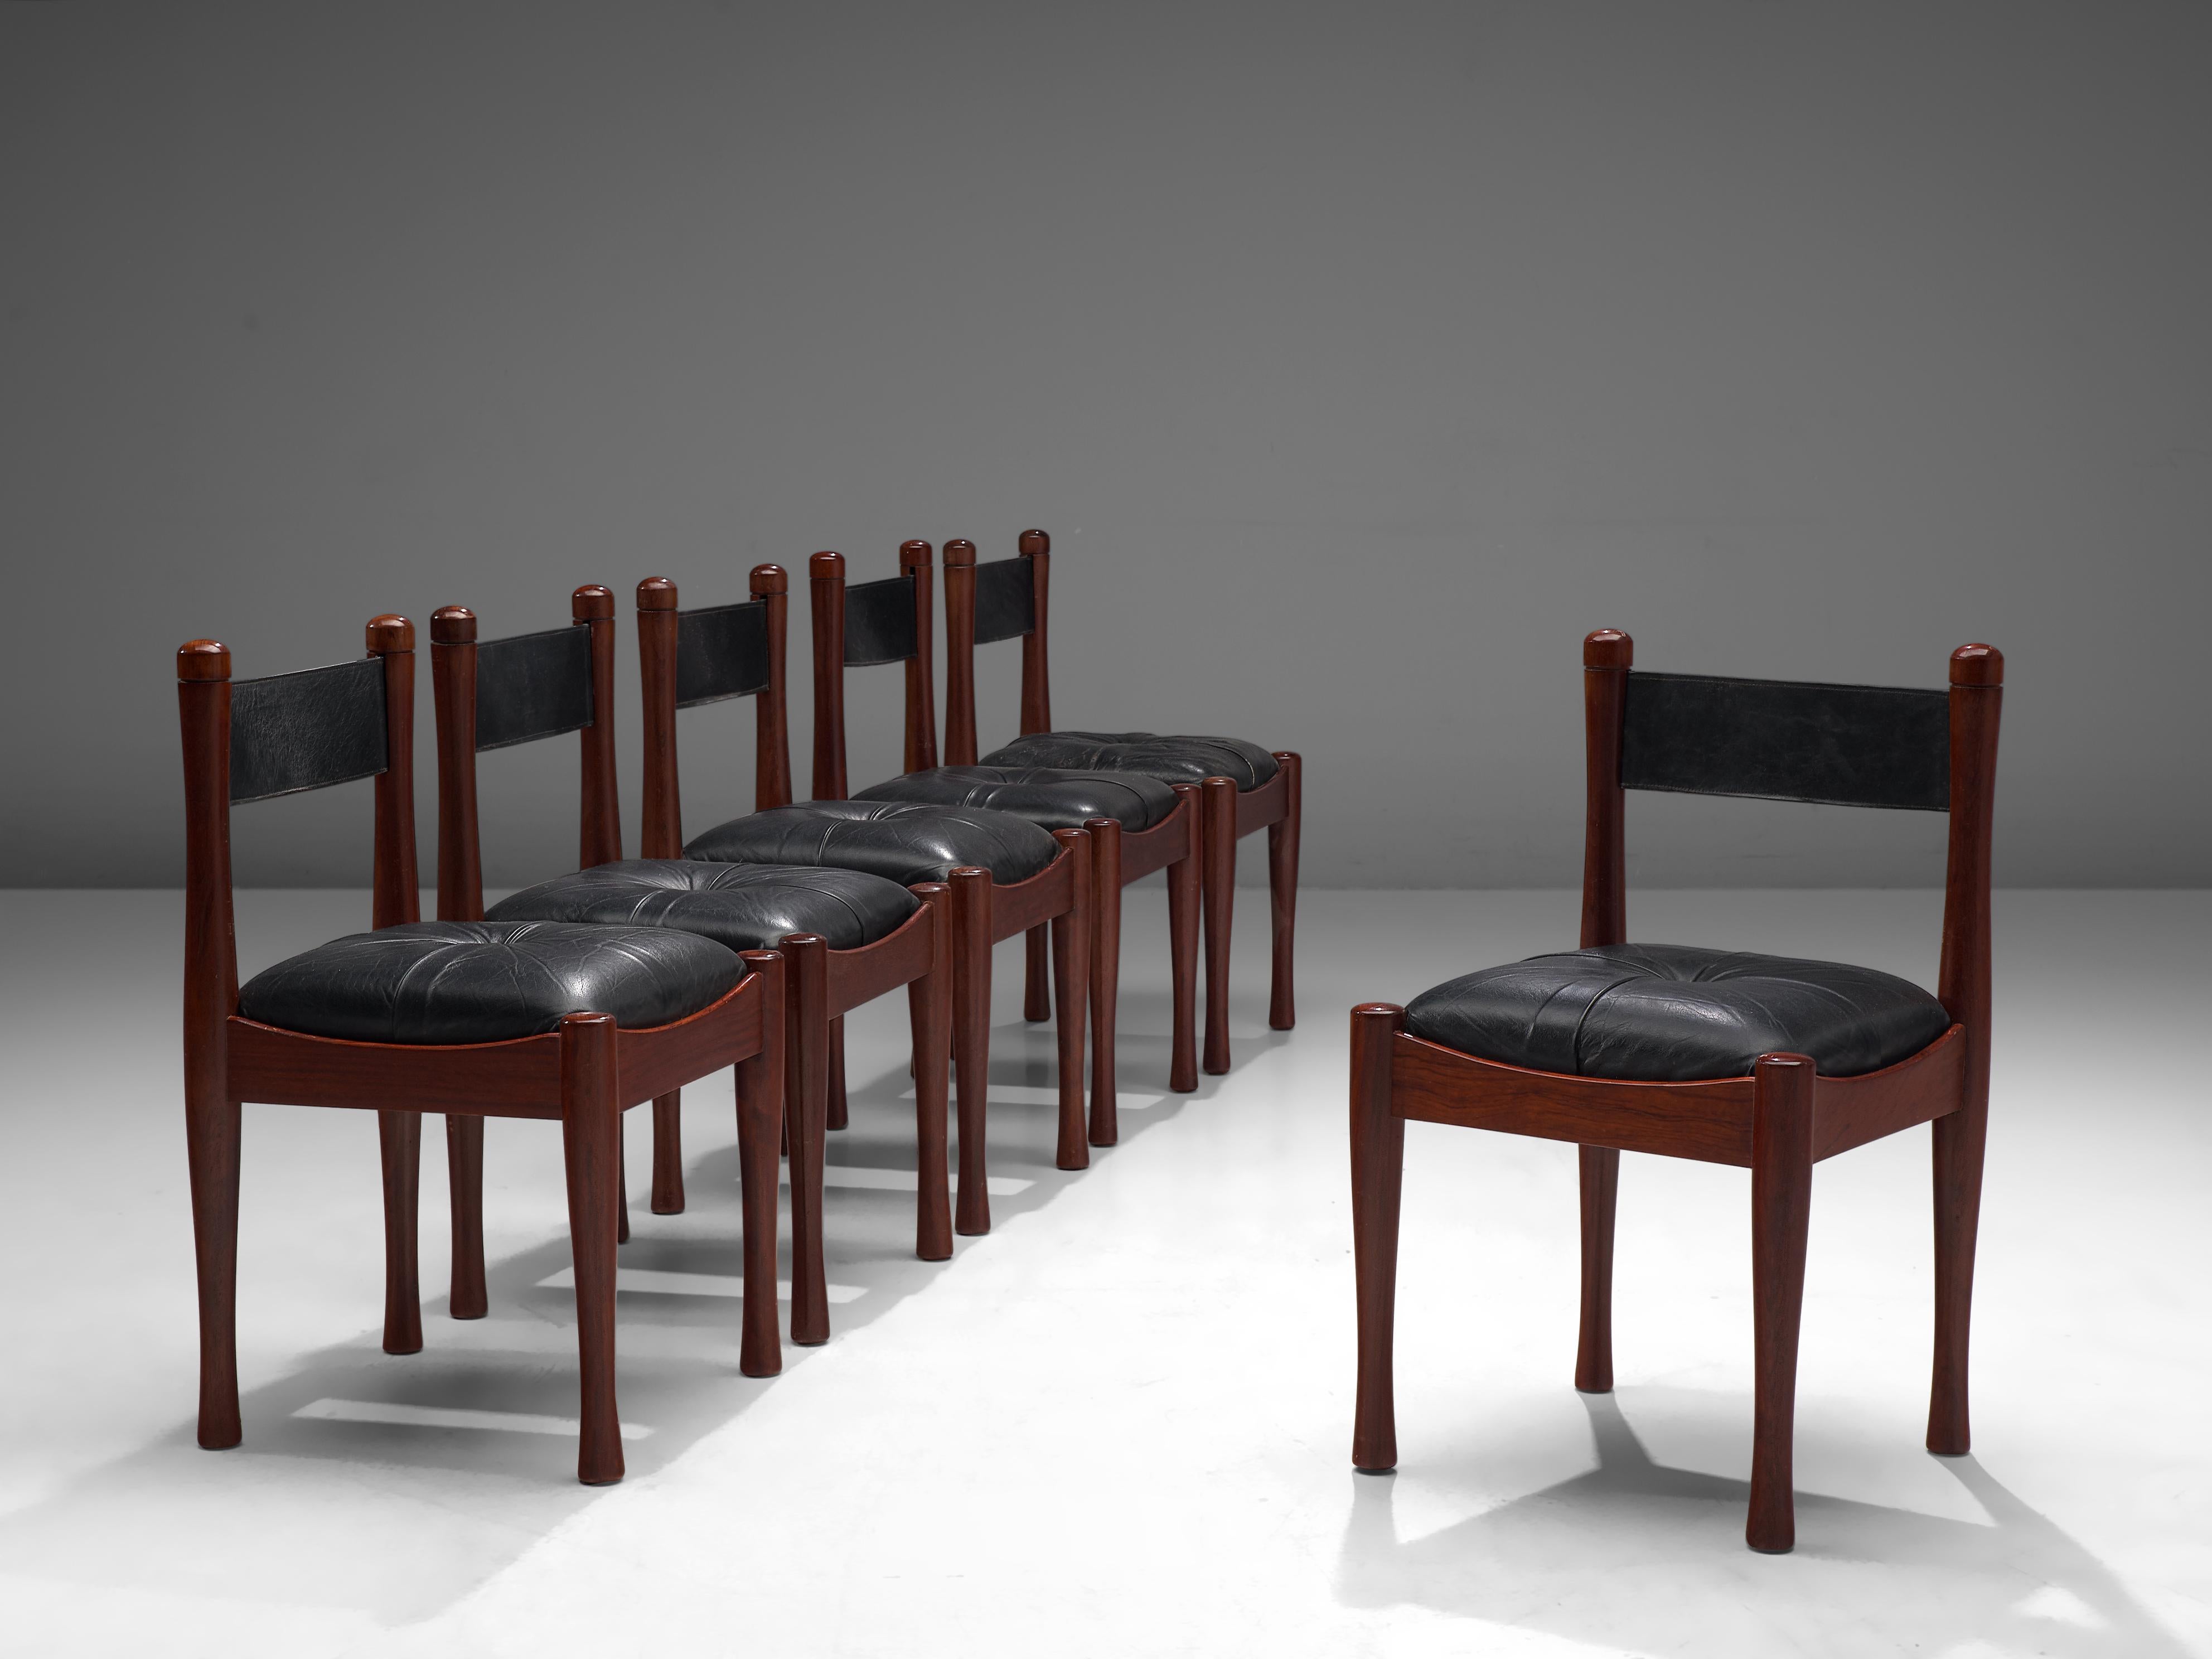 Silvio Coppola pour Bernini, ensemble de six chaises de salle à manger, bois teinté, cuir, Italie, années 1960.

Cet ensemble de chaises a été conçu par Silvio Coppola pour Bernini dans les années 1960. Ces chaises sont dotées d'un cadre sombre